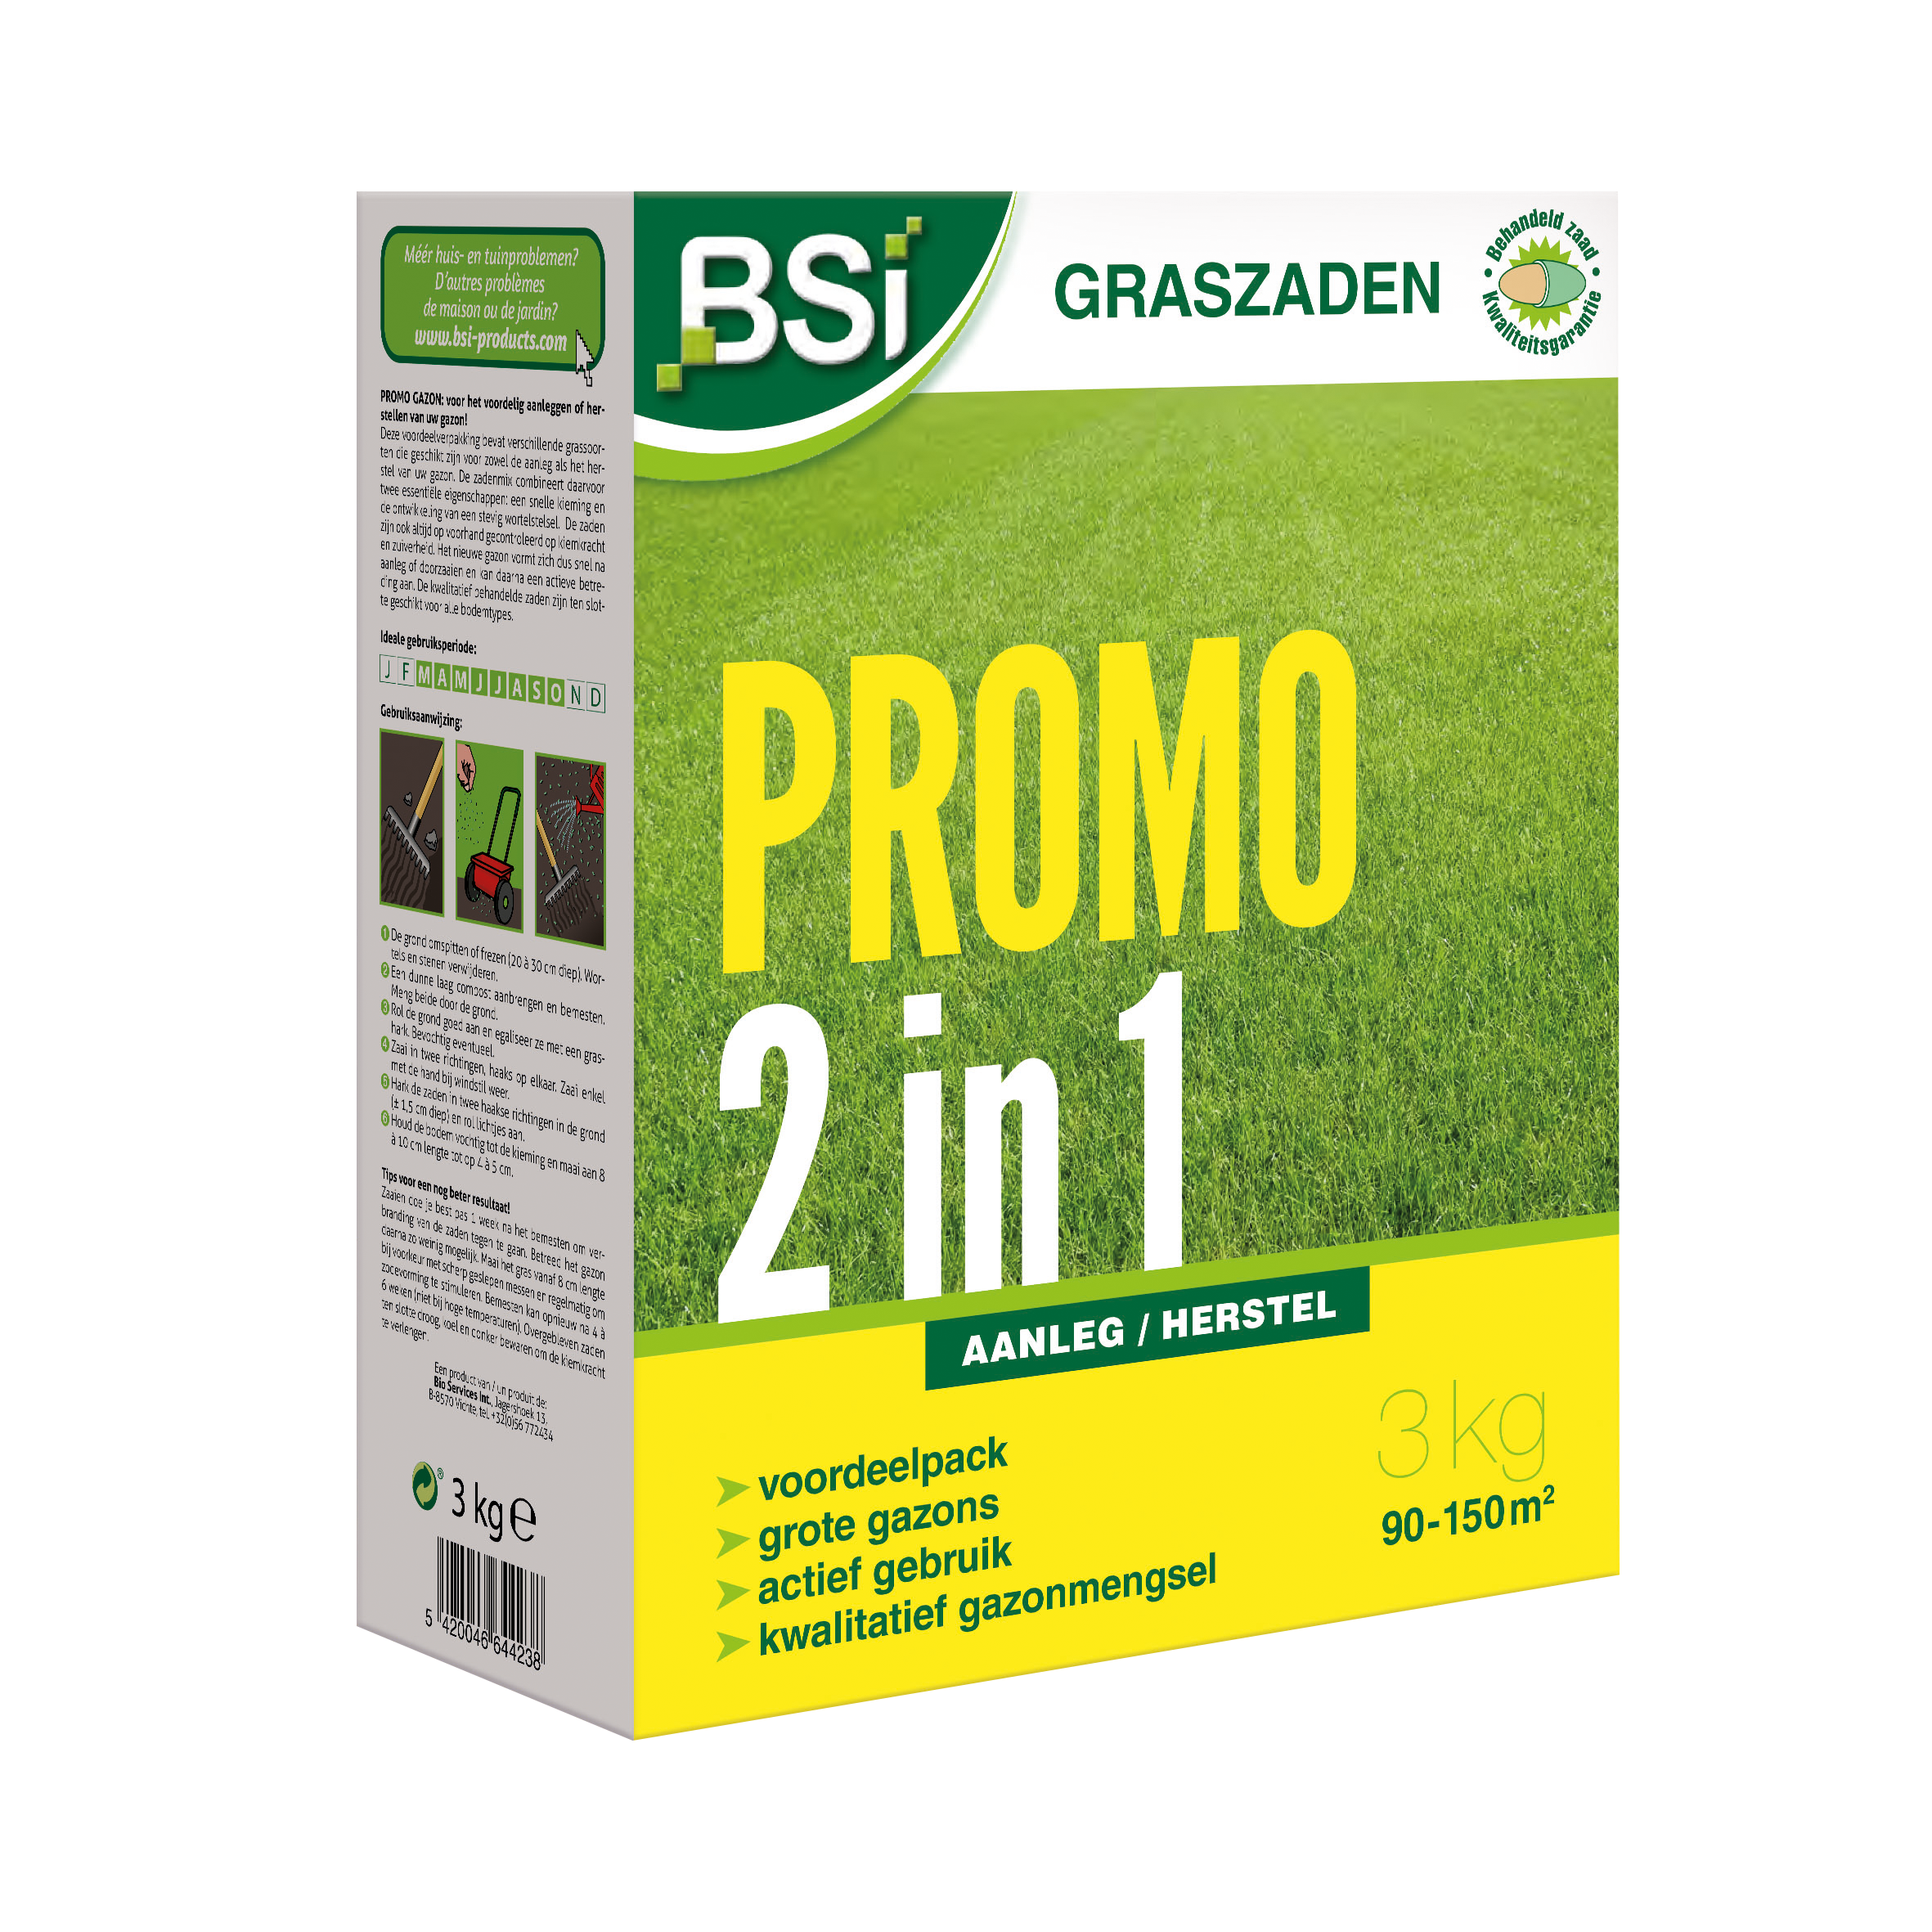 BSI Graszaad Promo 3 kg image